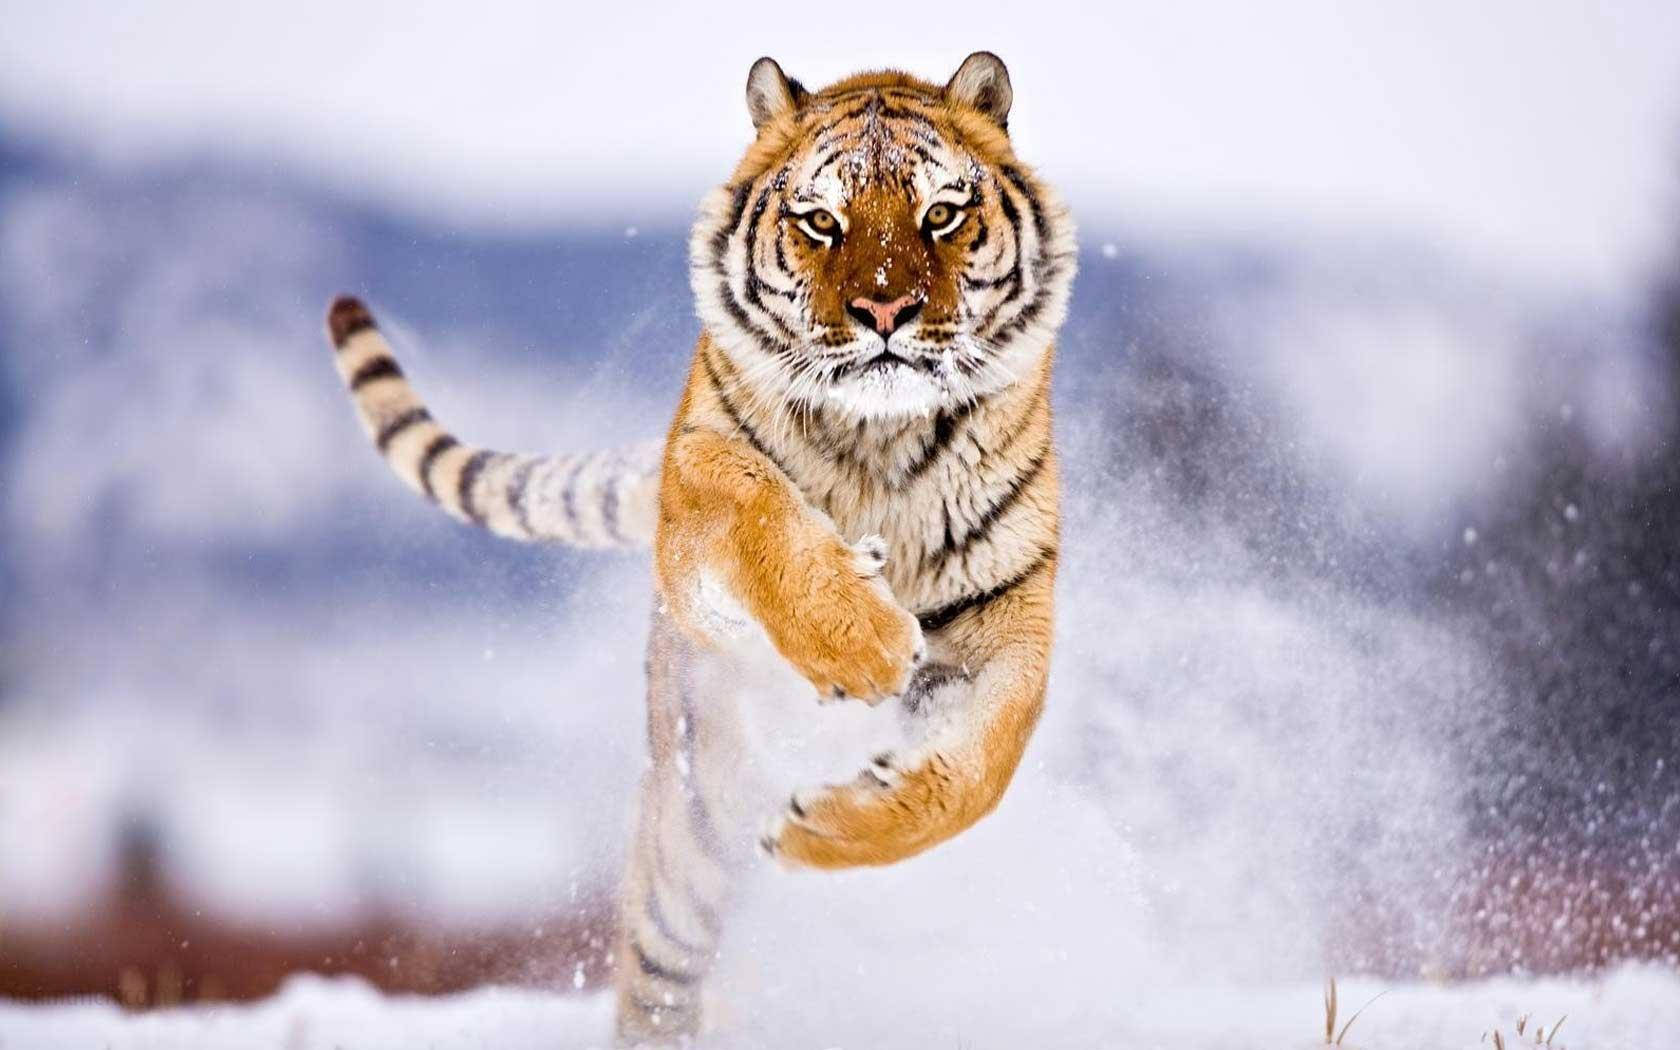 Tiger Animal Running In Snow Wallpaper